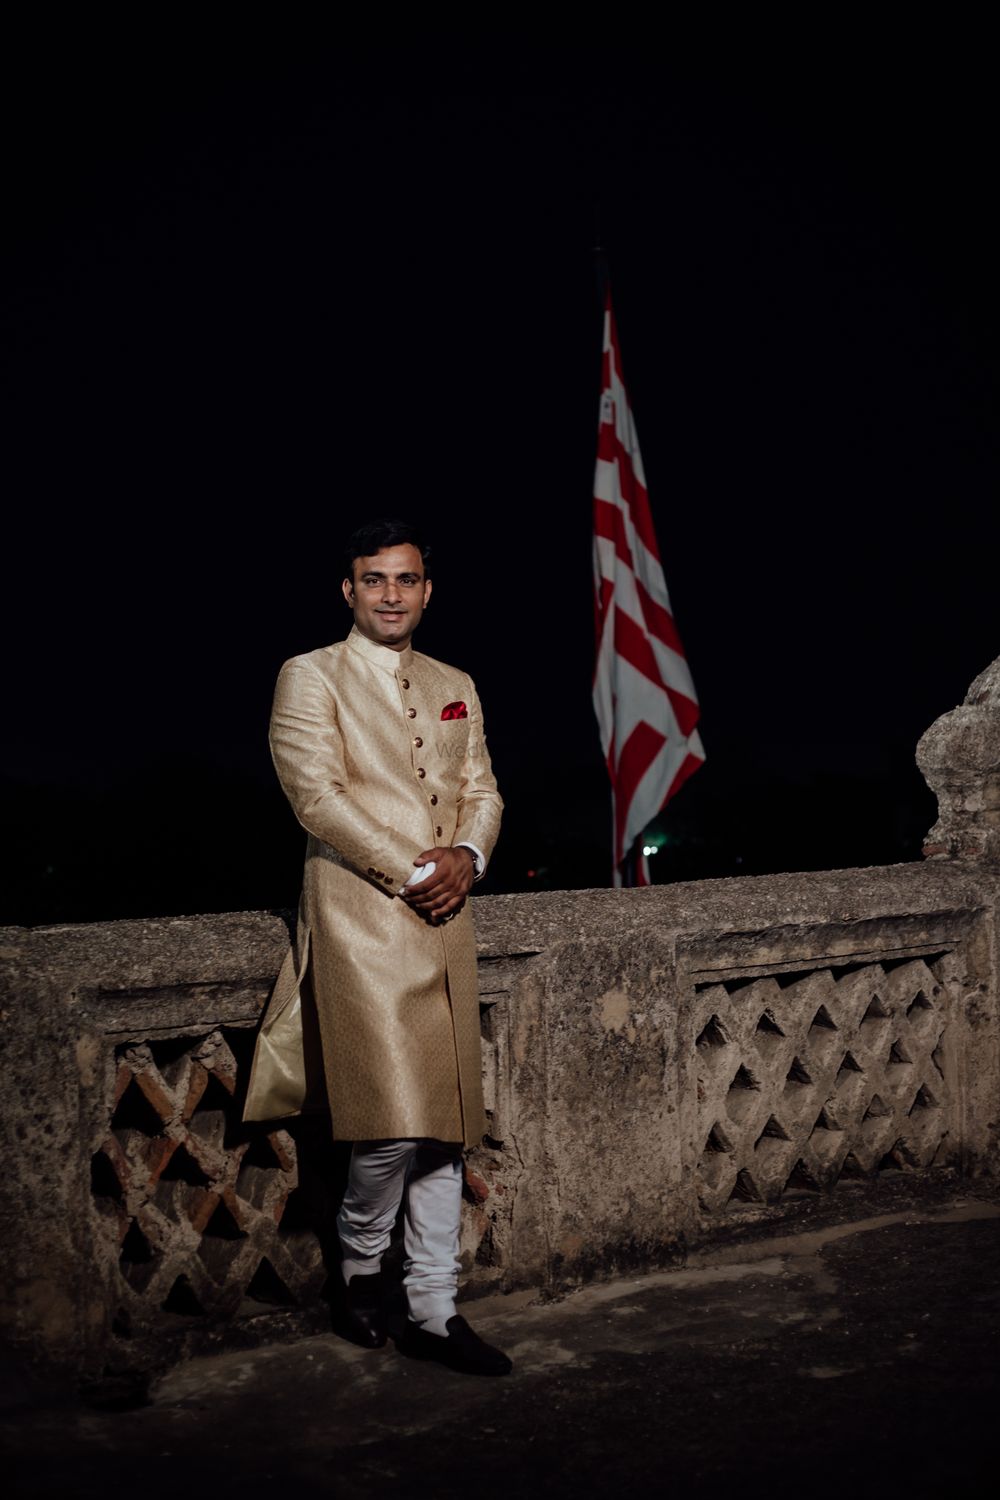 Photo From Deepshikha & Abhishek - By The Delhi Wedding Company